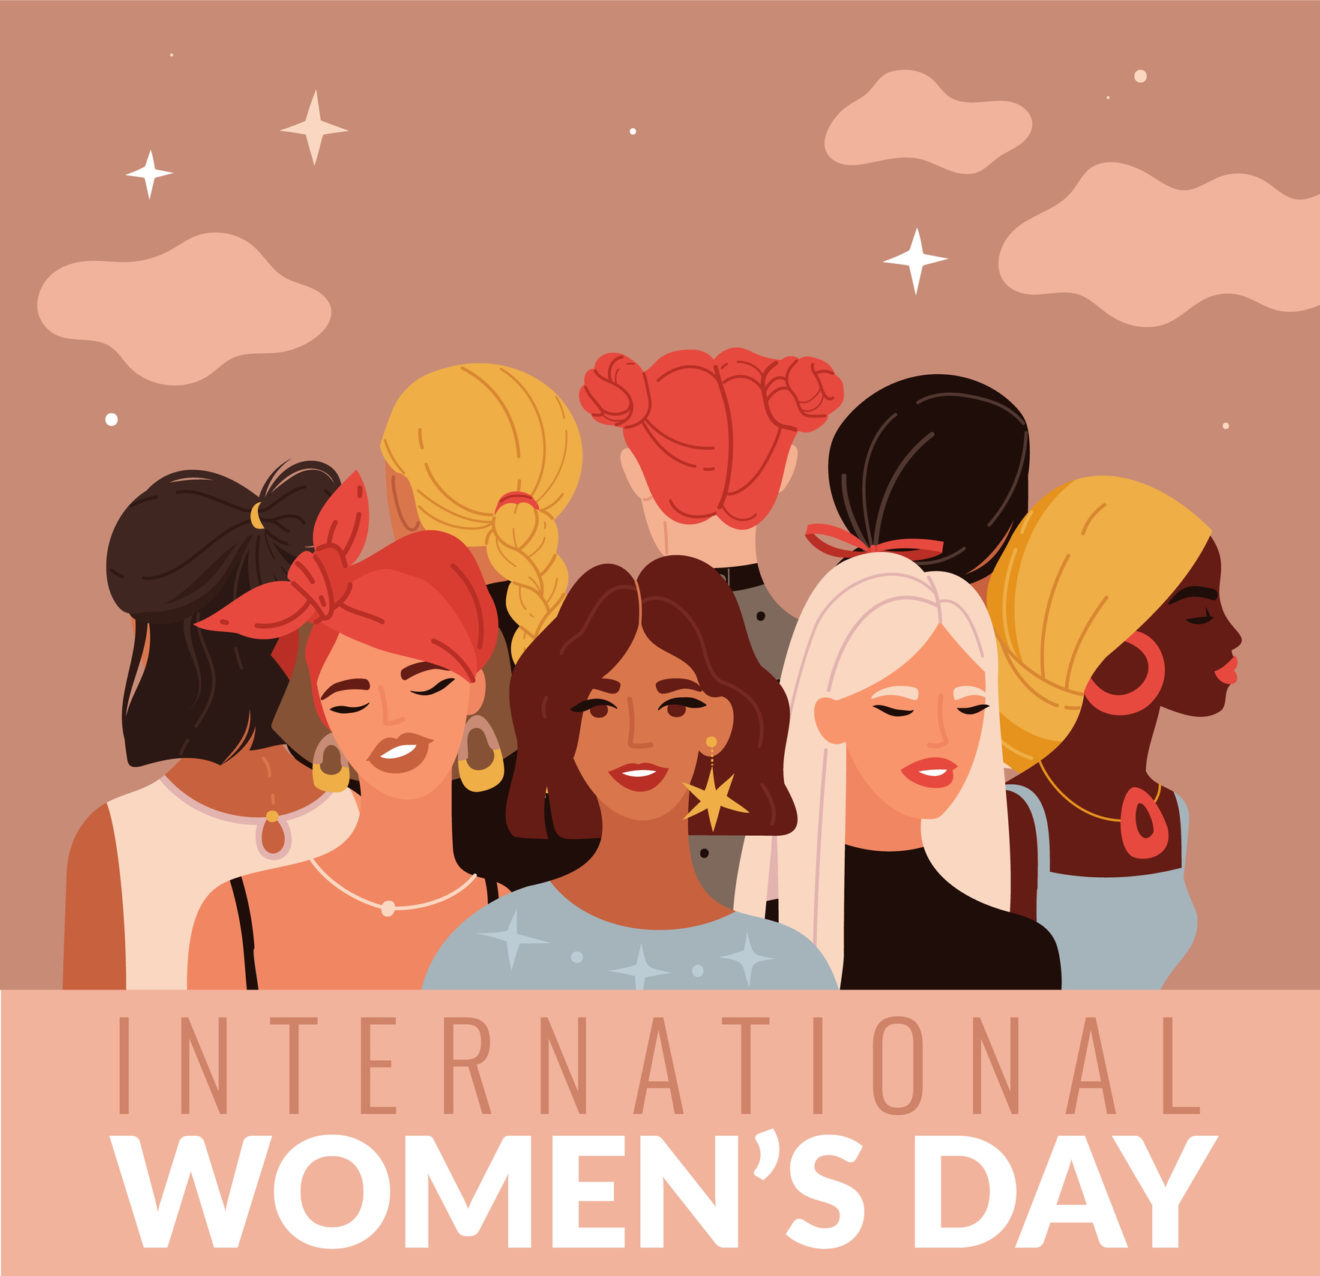 8 mars, journée des droits des femmes : que faire en tant qu’homme ?